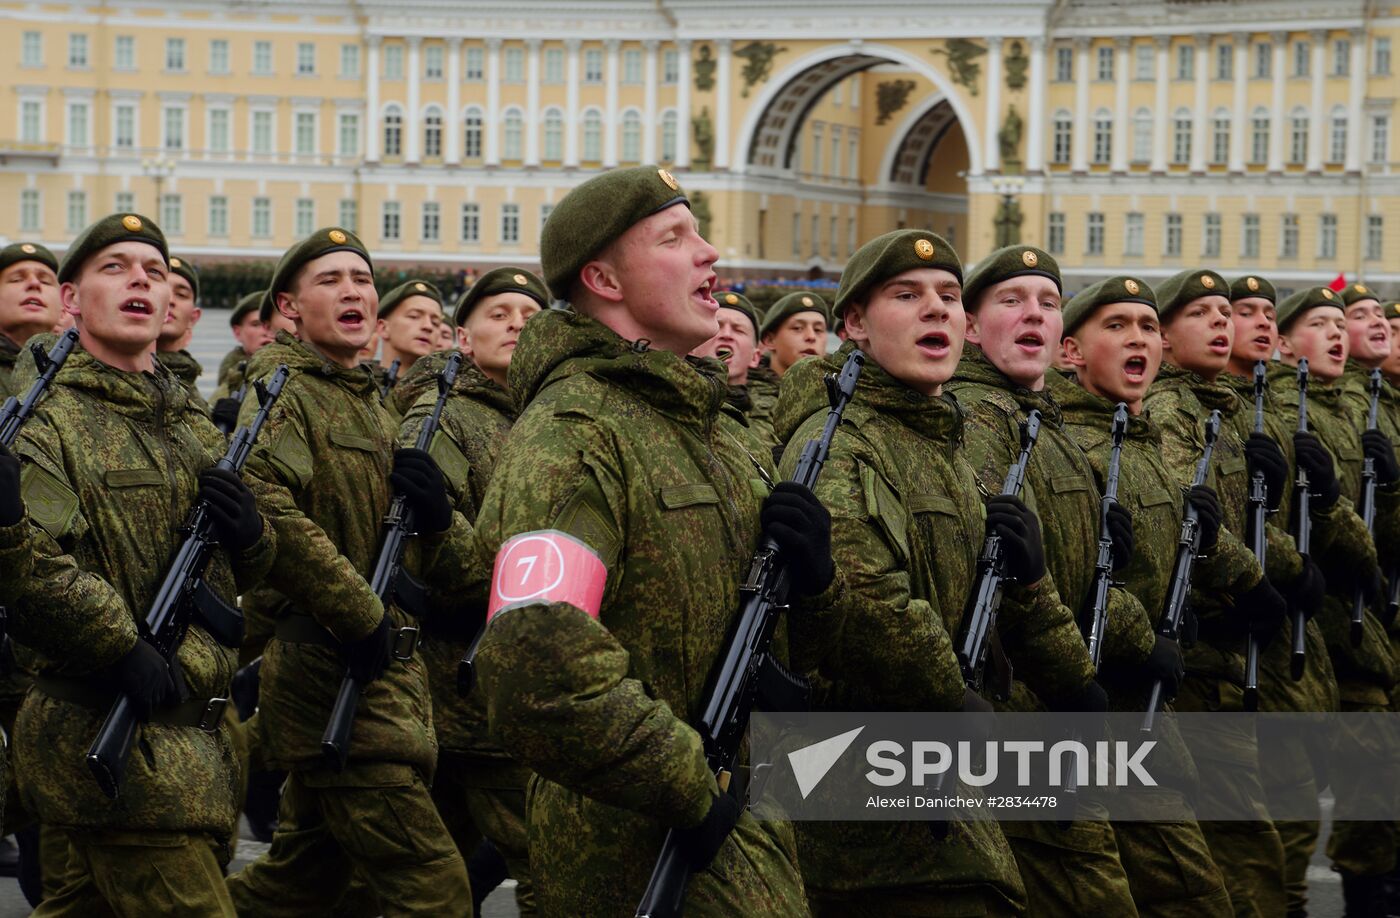 Parade practice in St. Petersburg